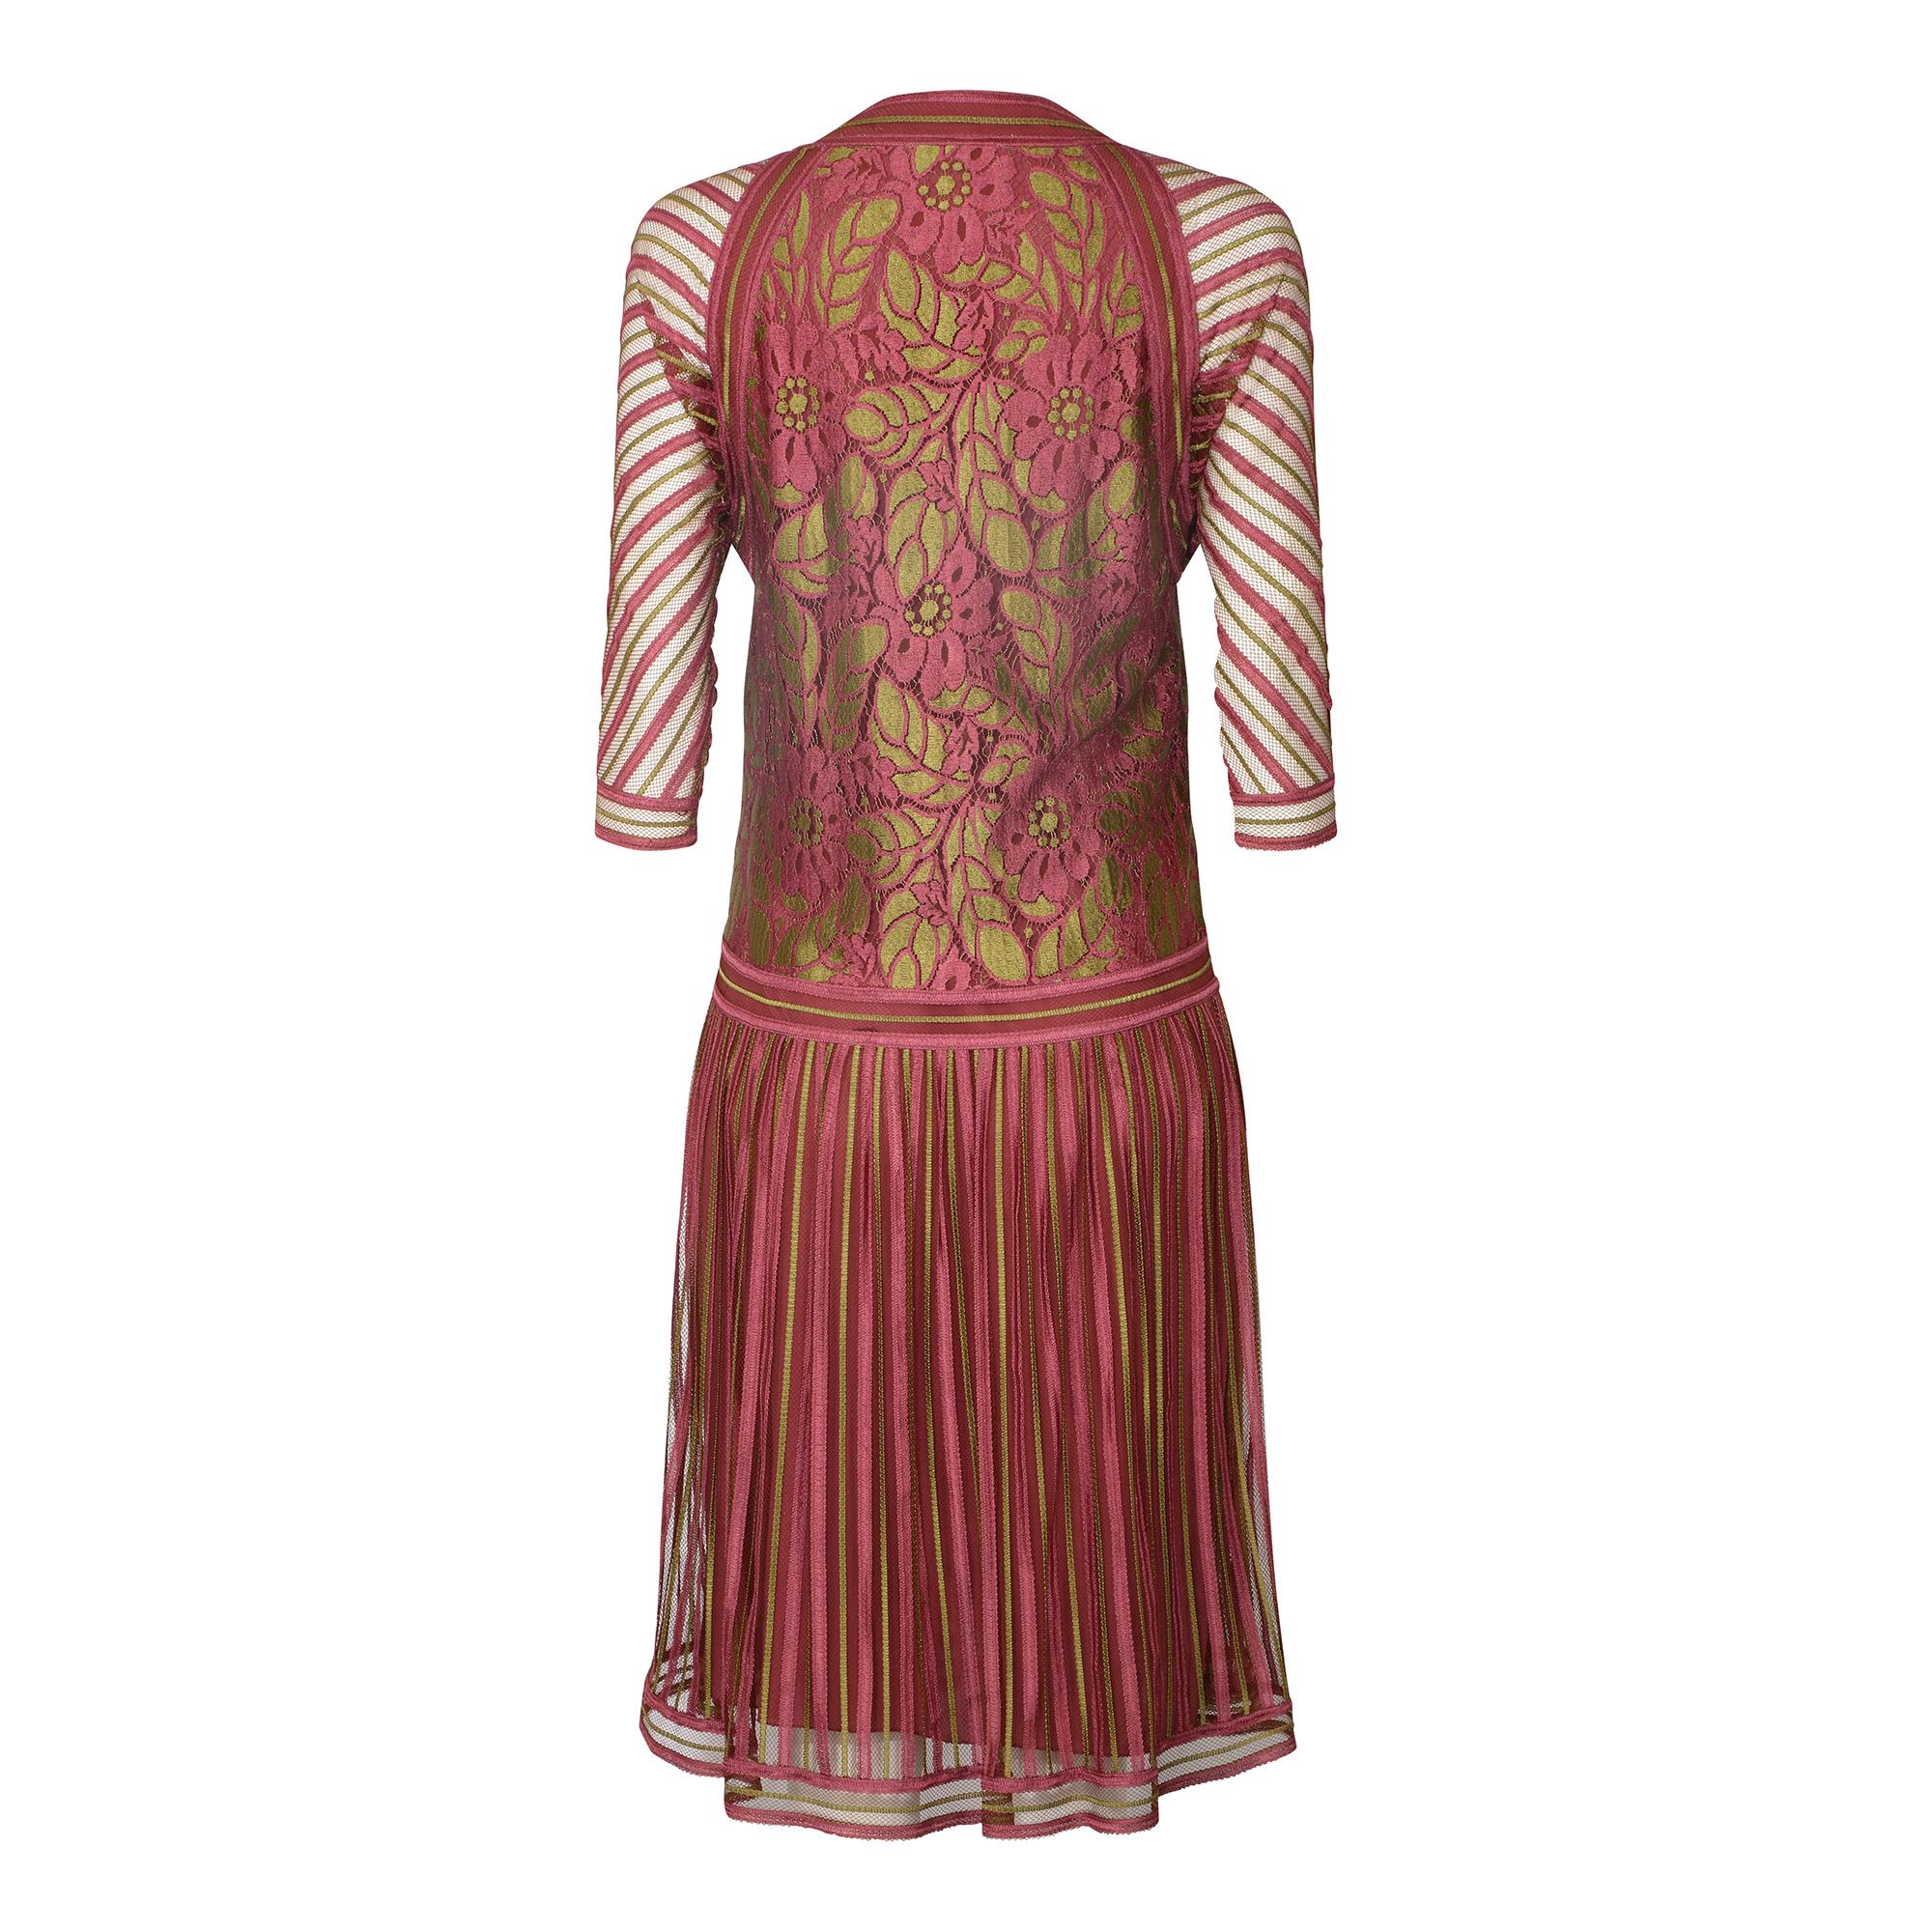 1970er Janice Wainwright Rosa und Gold 1920er Jahre Stil Flapper Kleid.  Dies ist ein wunderbares Beispiel für Janice Wainwrights frühes Werk, das von Sammlern und Museen gleichermaßen begehrt ist.  Sie gründete 1970 ihr eigenes Unternehmen, nachdem